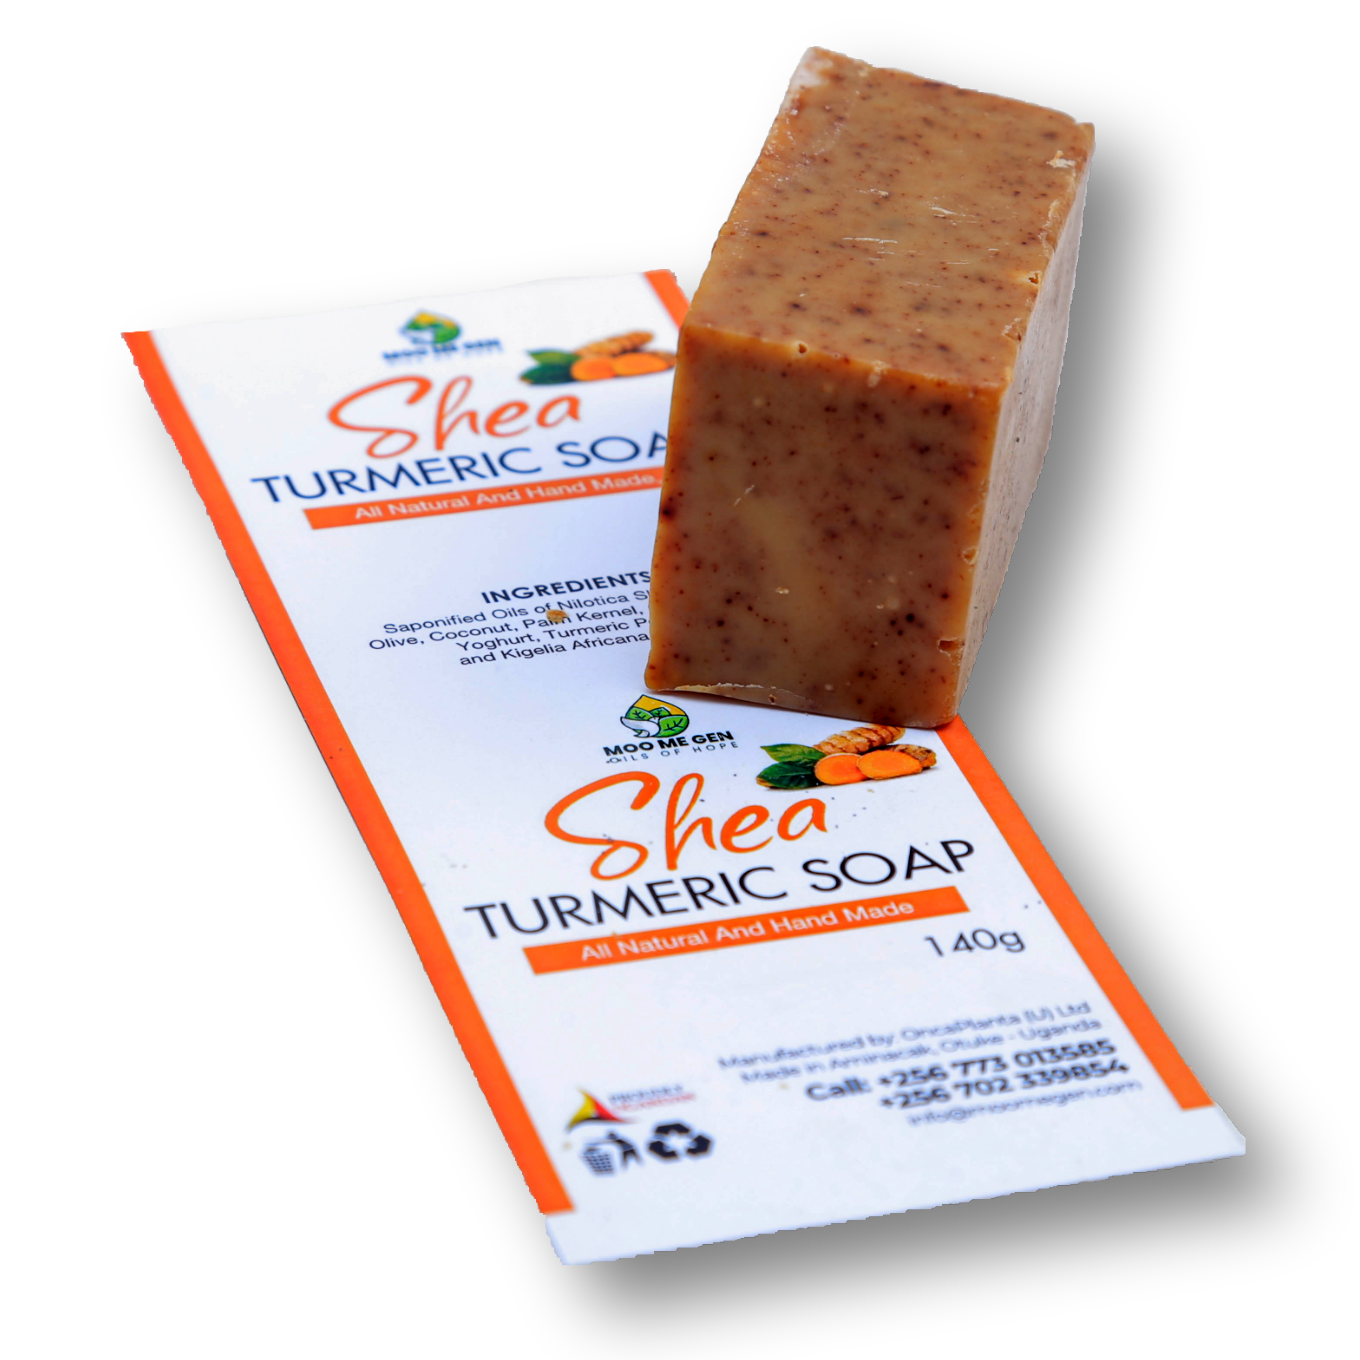 Tumeric Soap